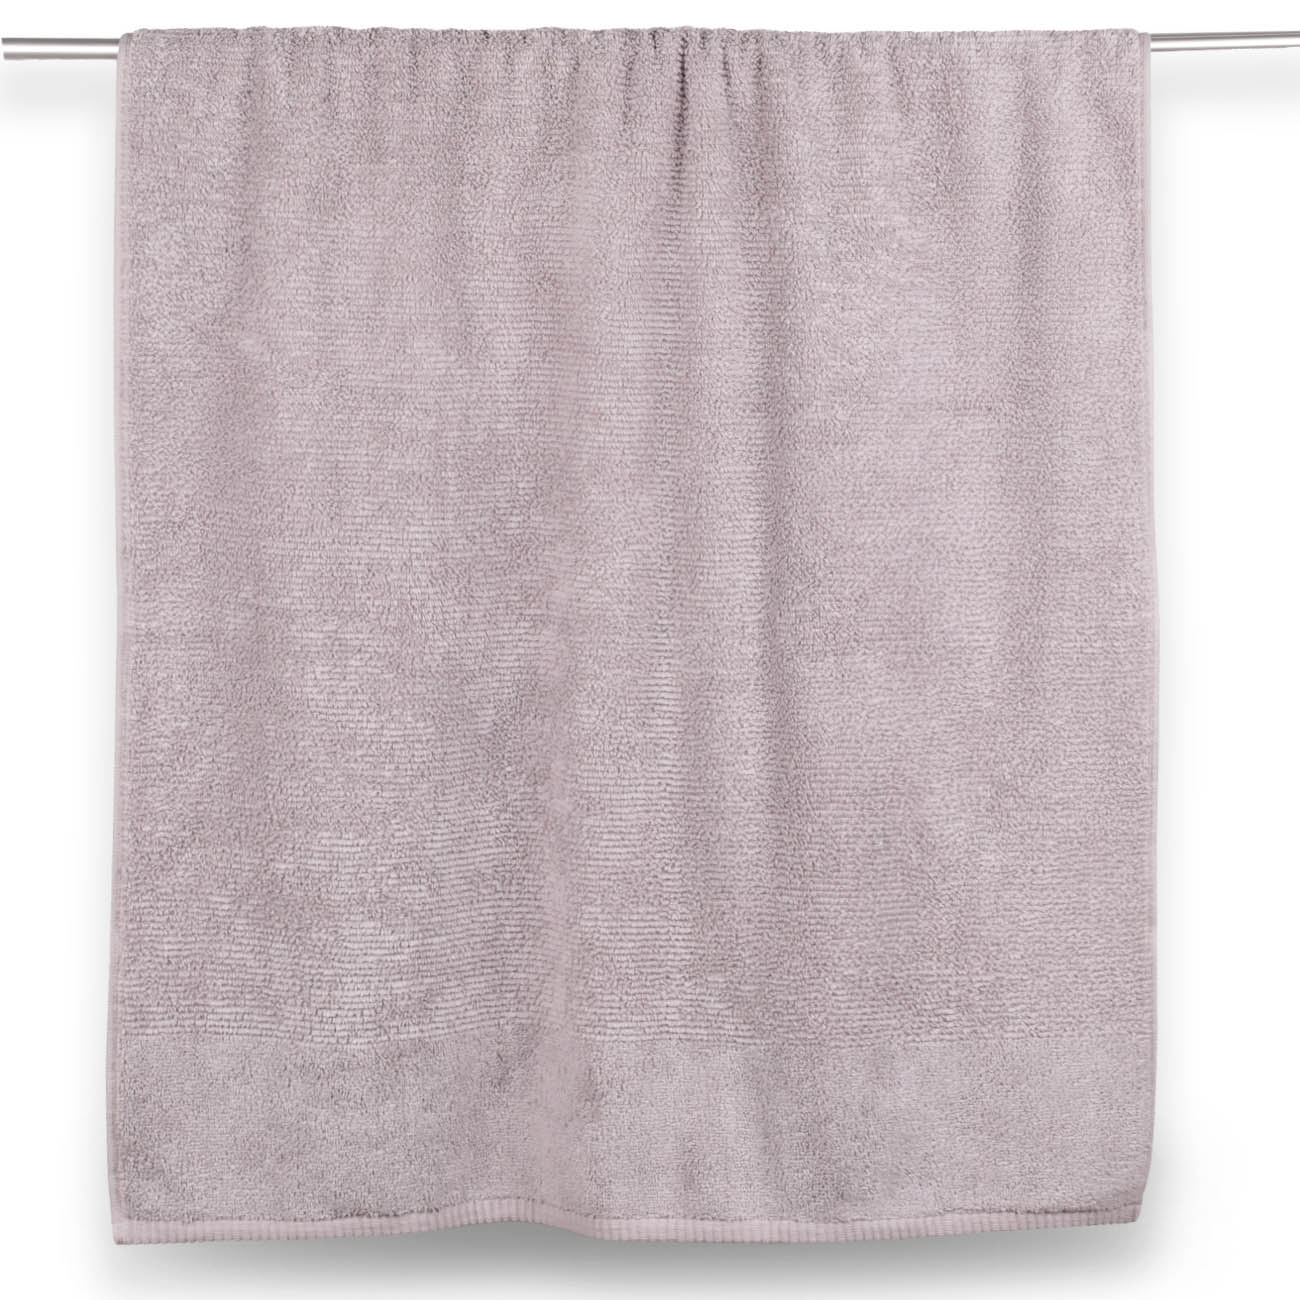 Towel, 70x140 cm, Cotton, purple, Terry cotton изображение № 3